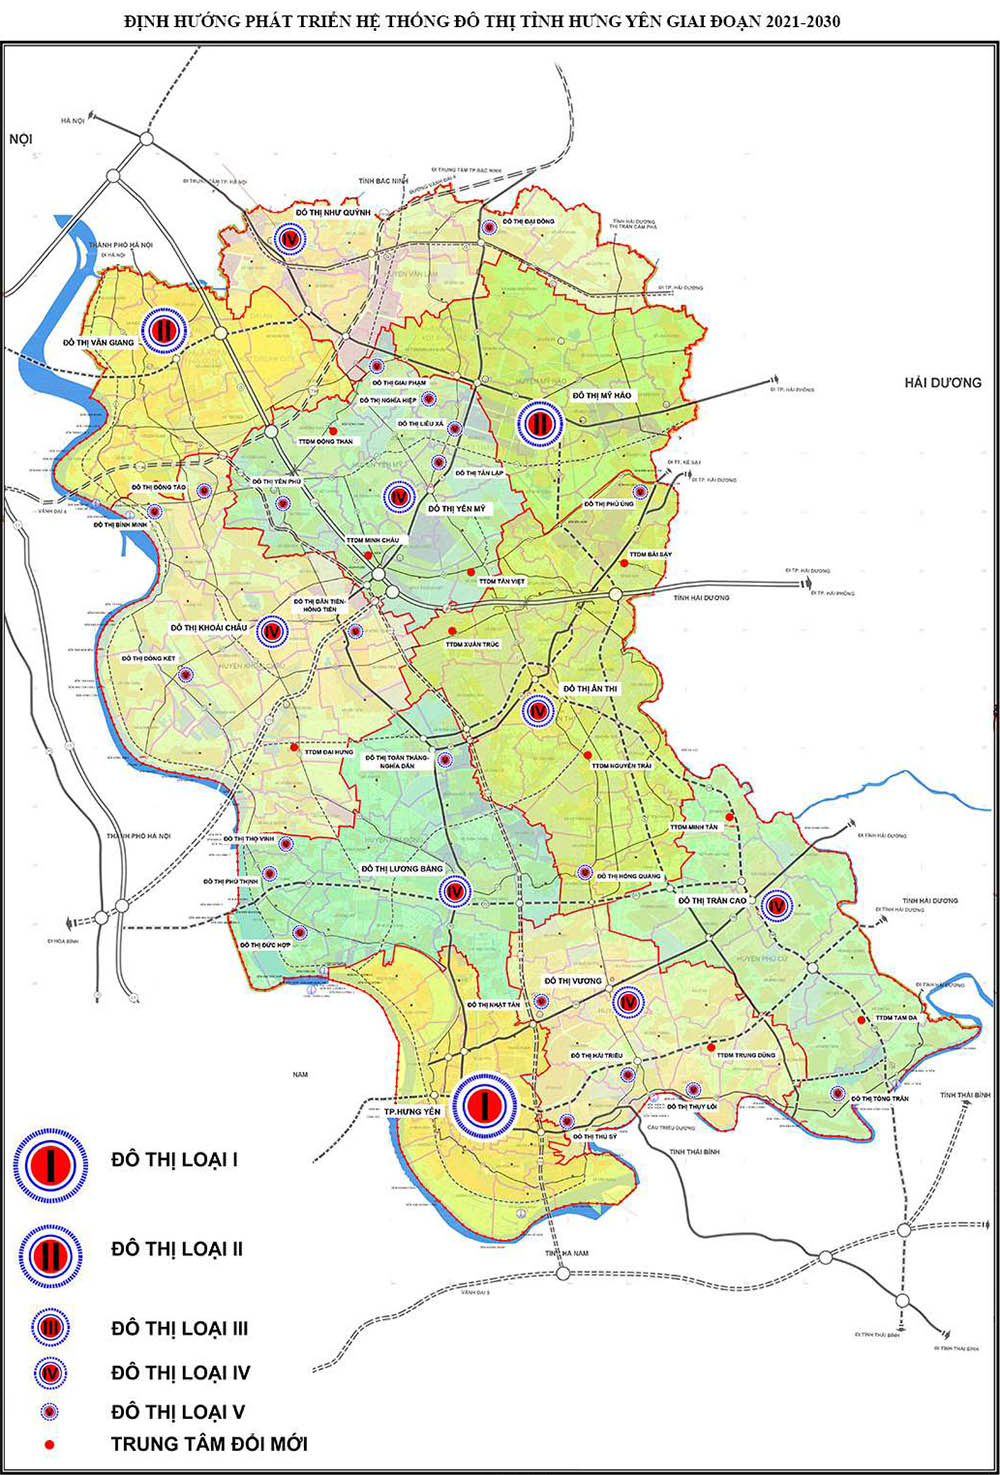 Quy hoạch phát triển đô thị tỉnh Hưng Yên đến năm 2030